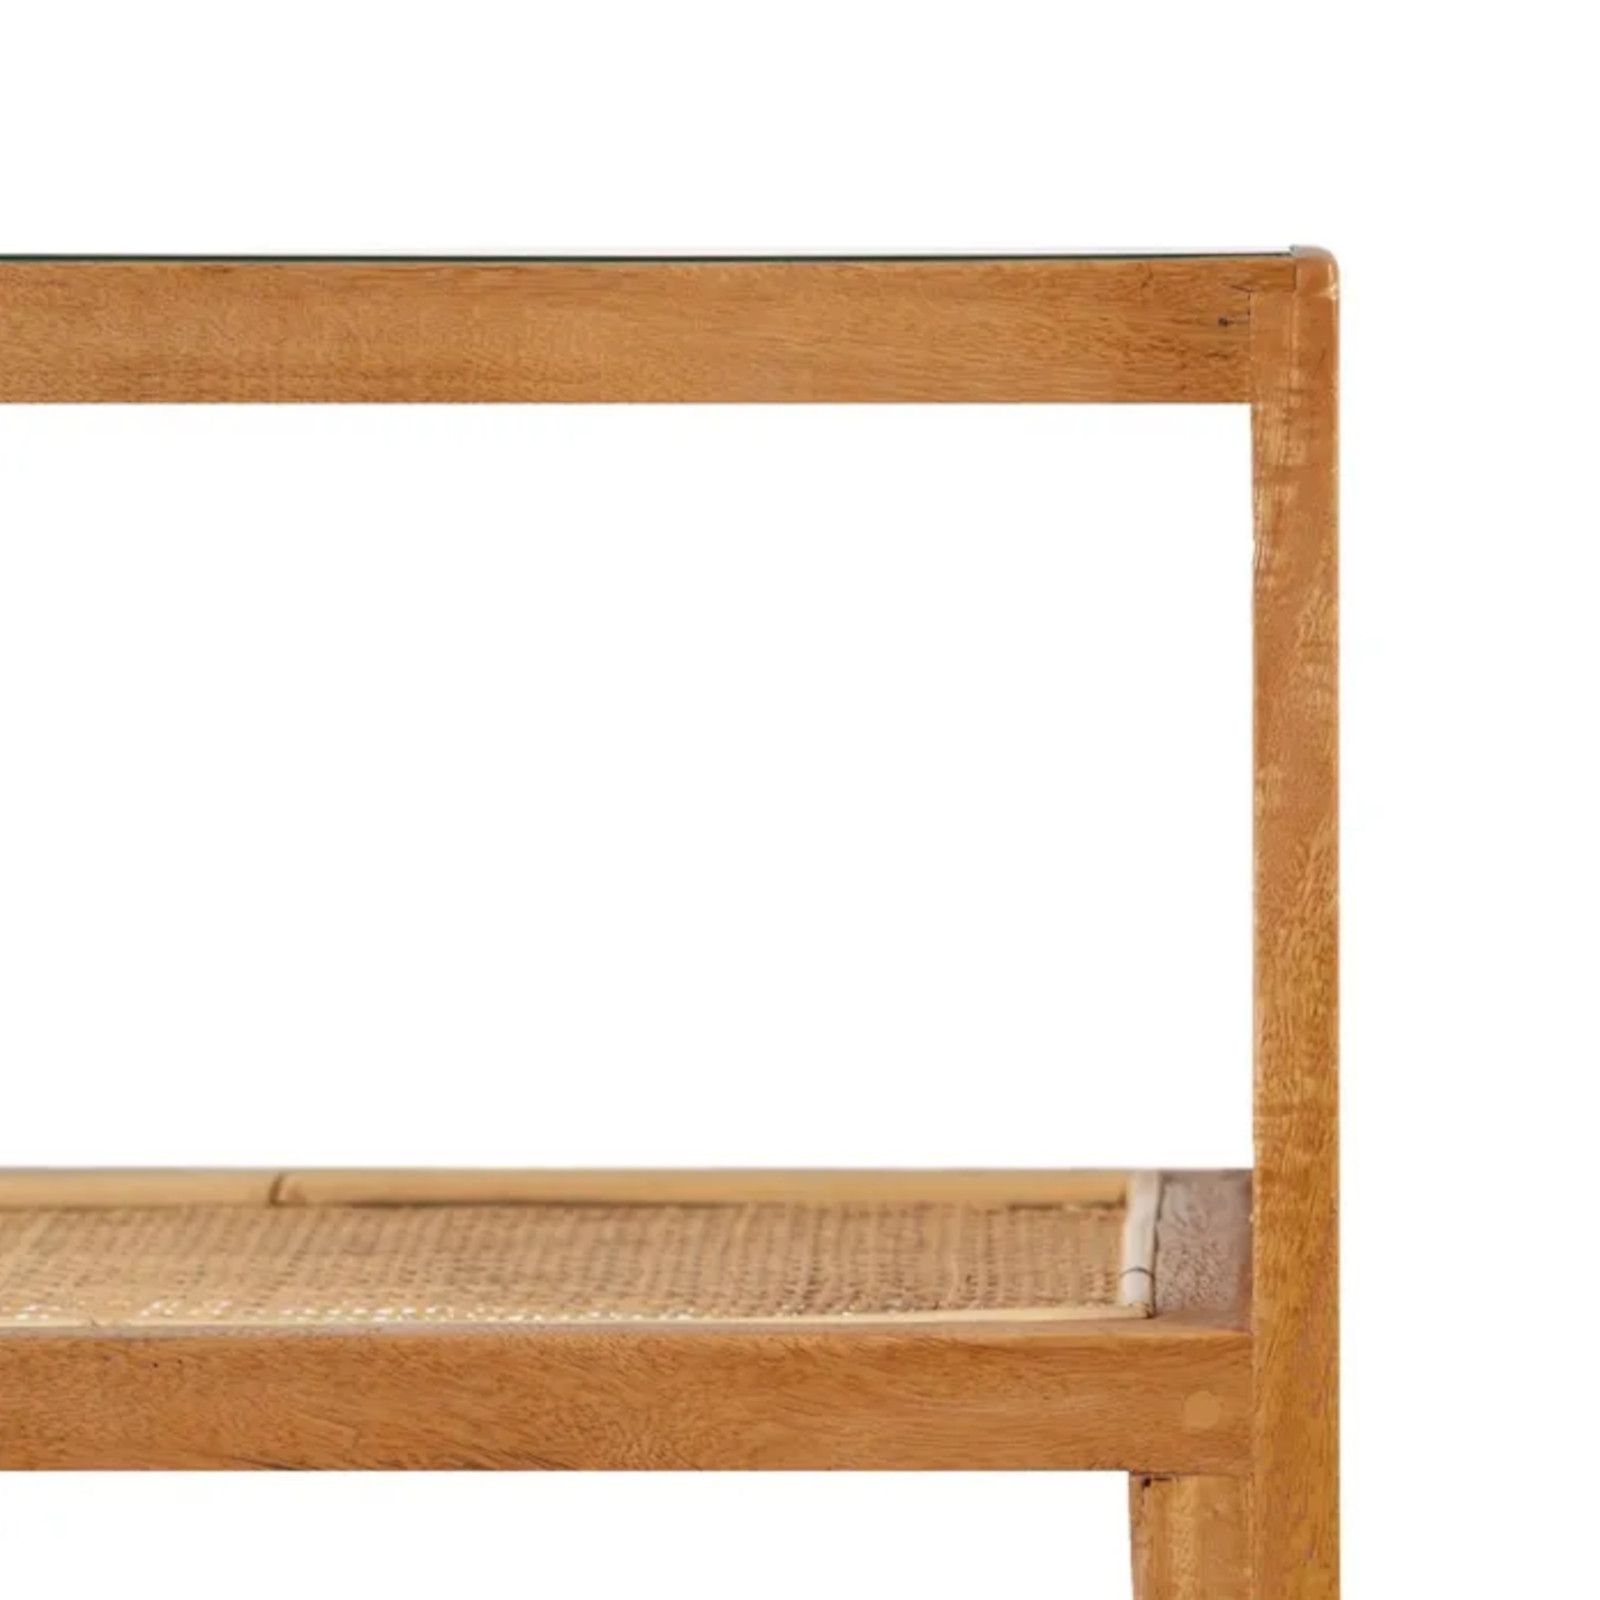 Consolle 90x80 cm in legno di mango e vetro - Vidrio